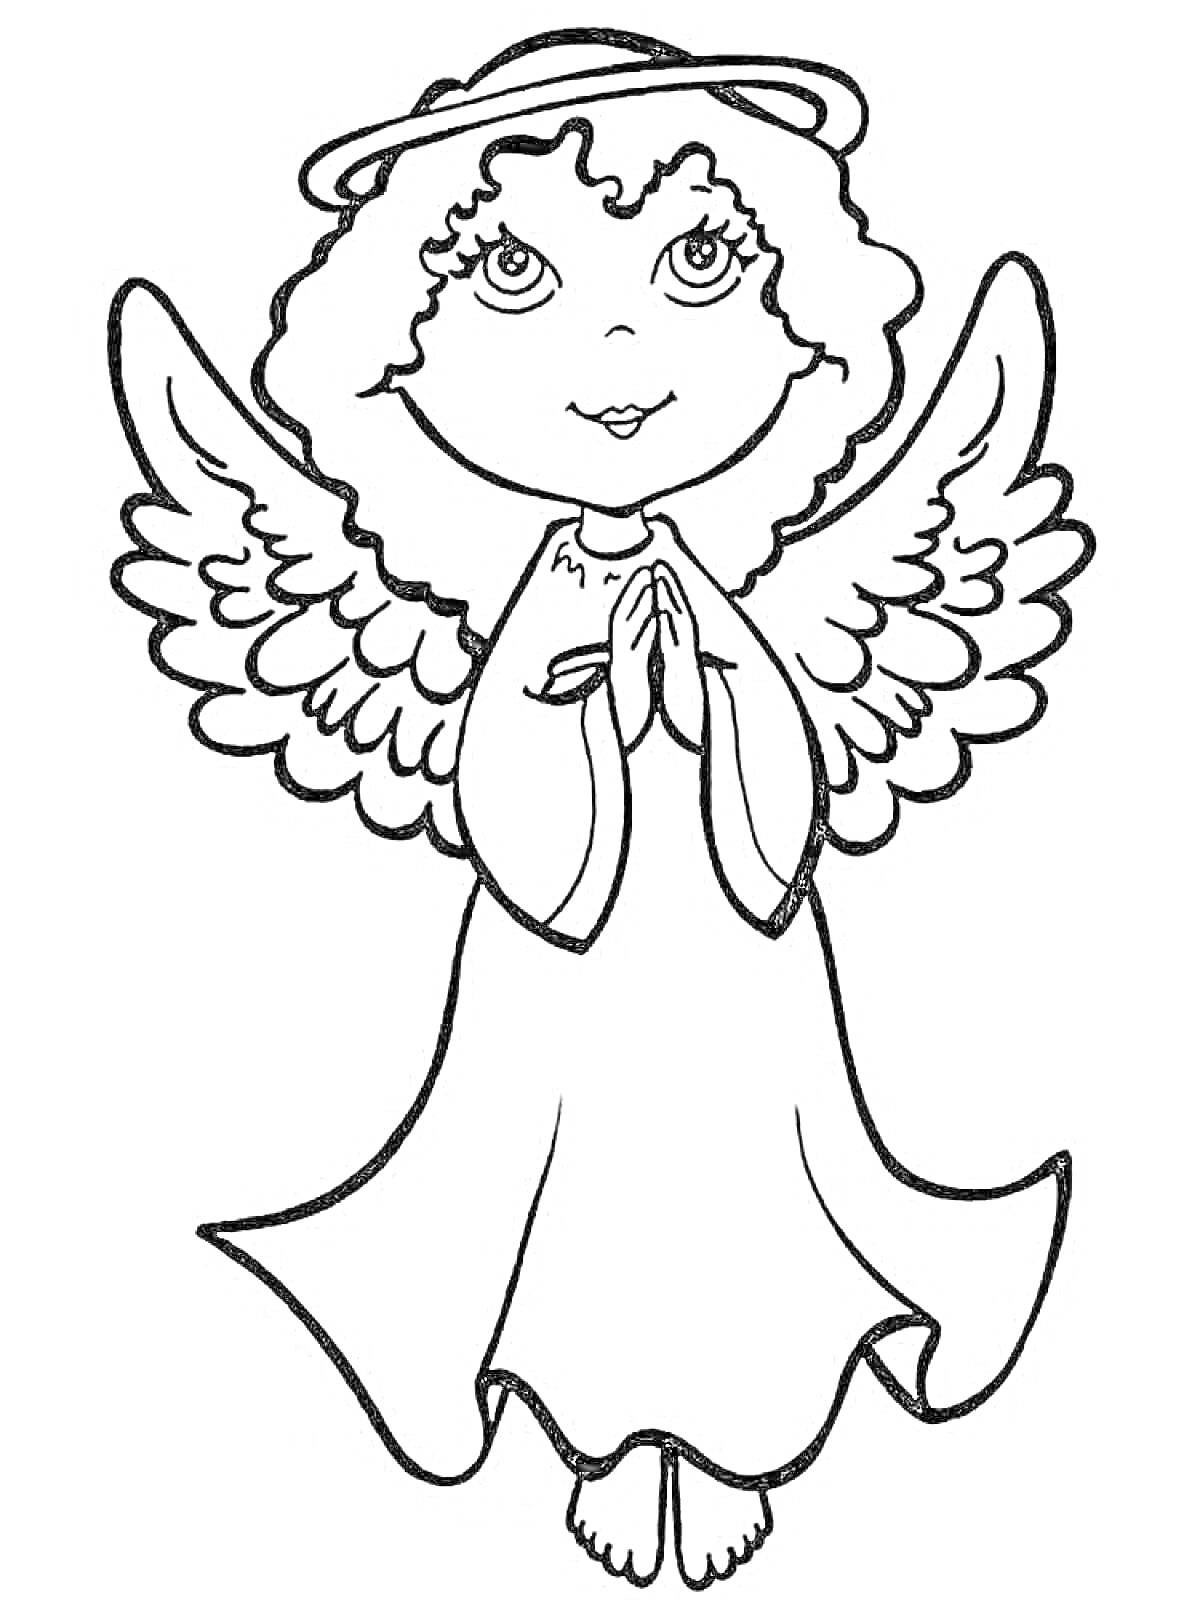 Раскраска Ангелочек с крыльями и нимбом, сложенные руки в молитве